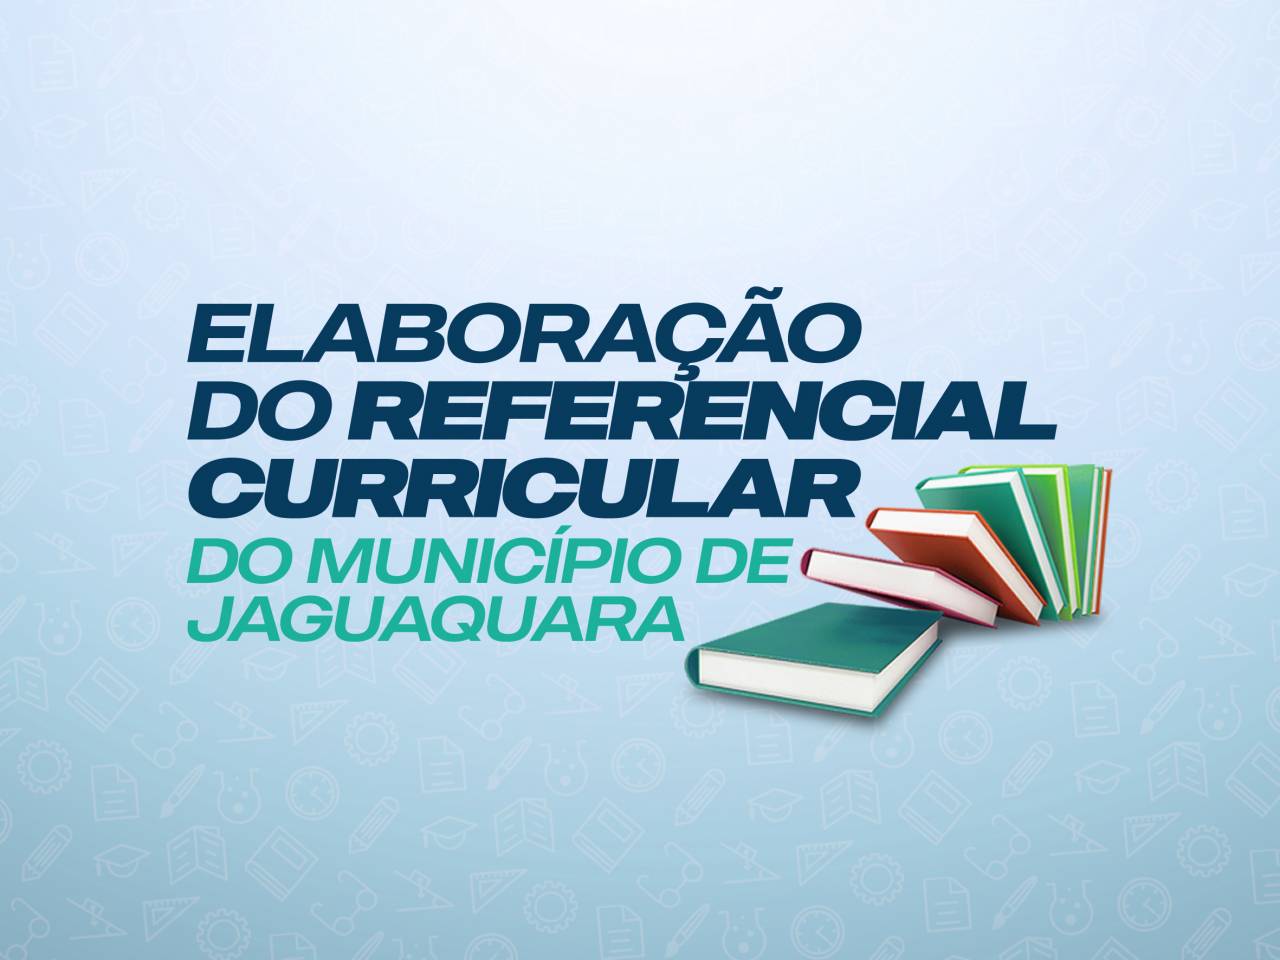 Referencial Curricular de Jaguaquara